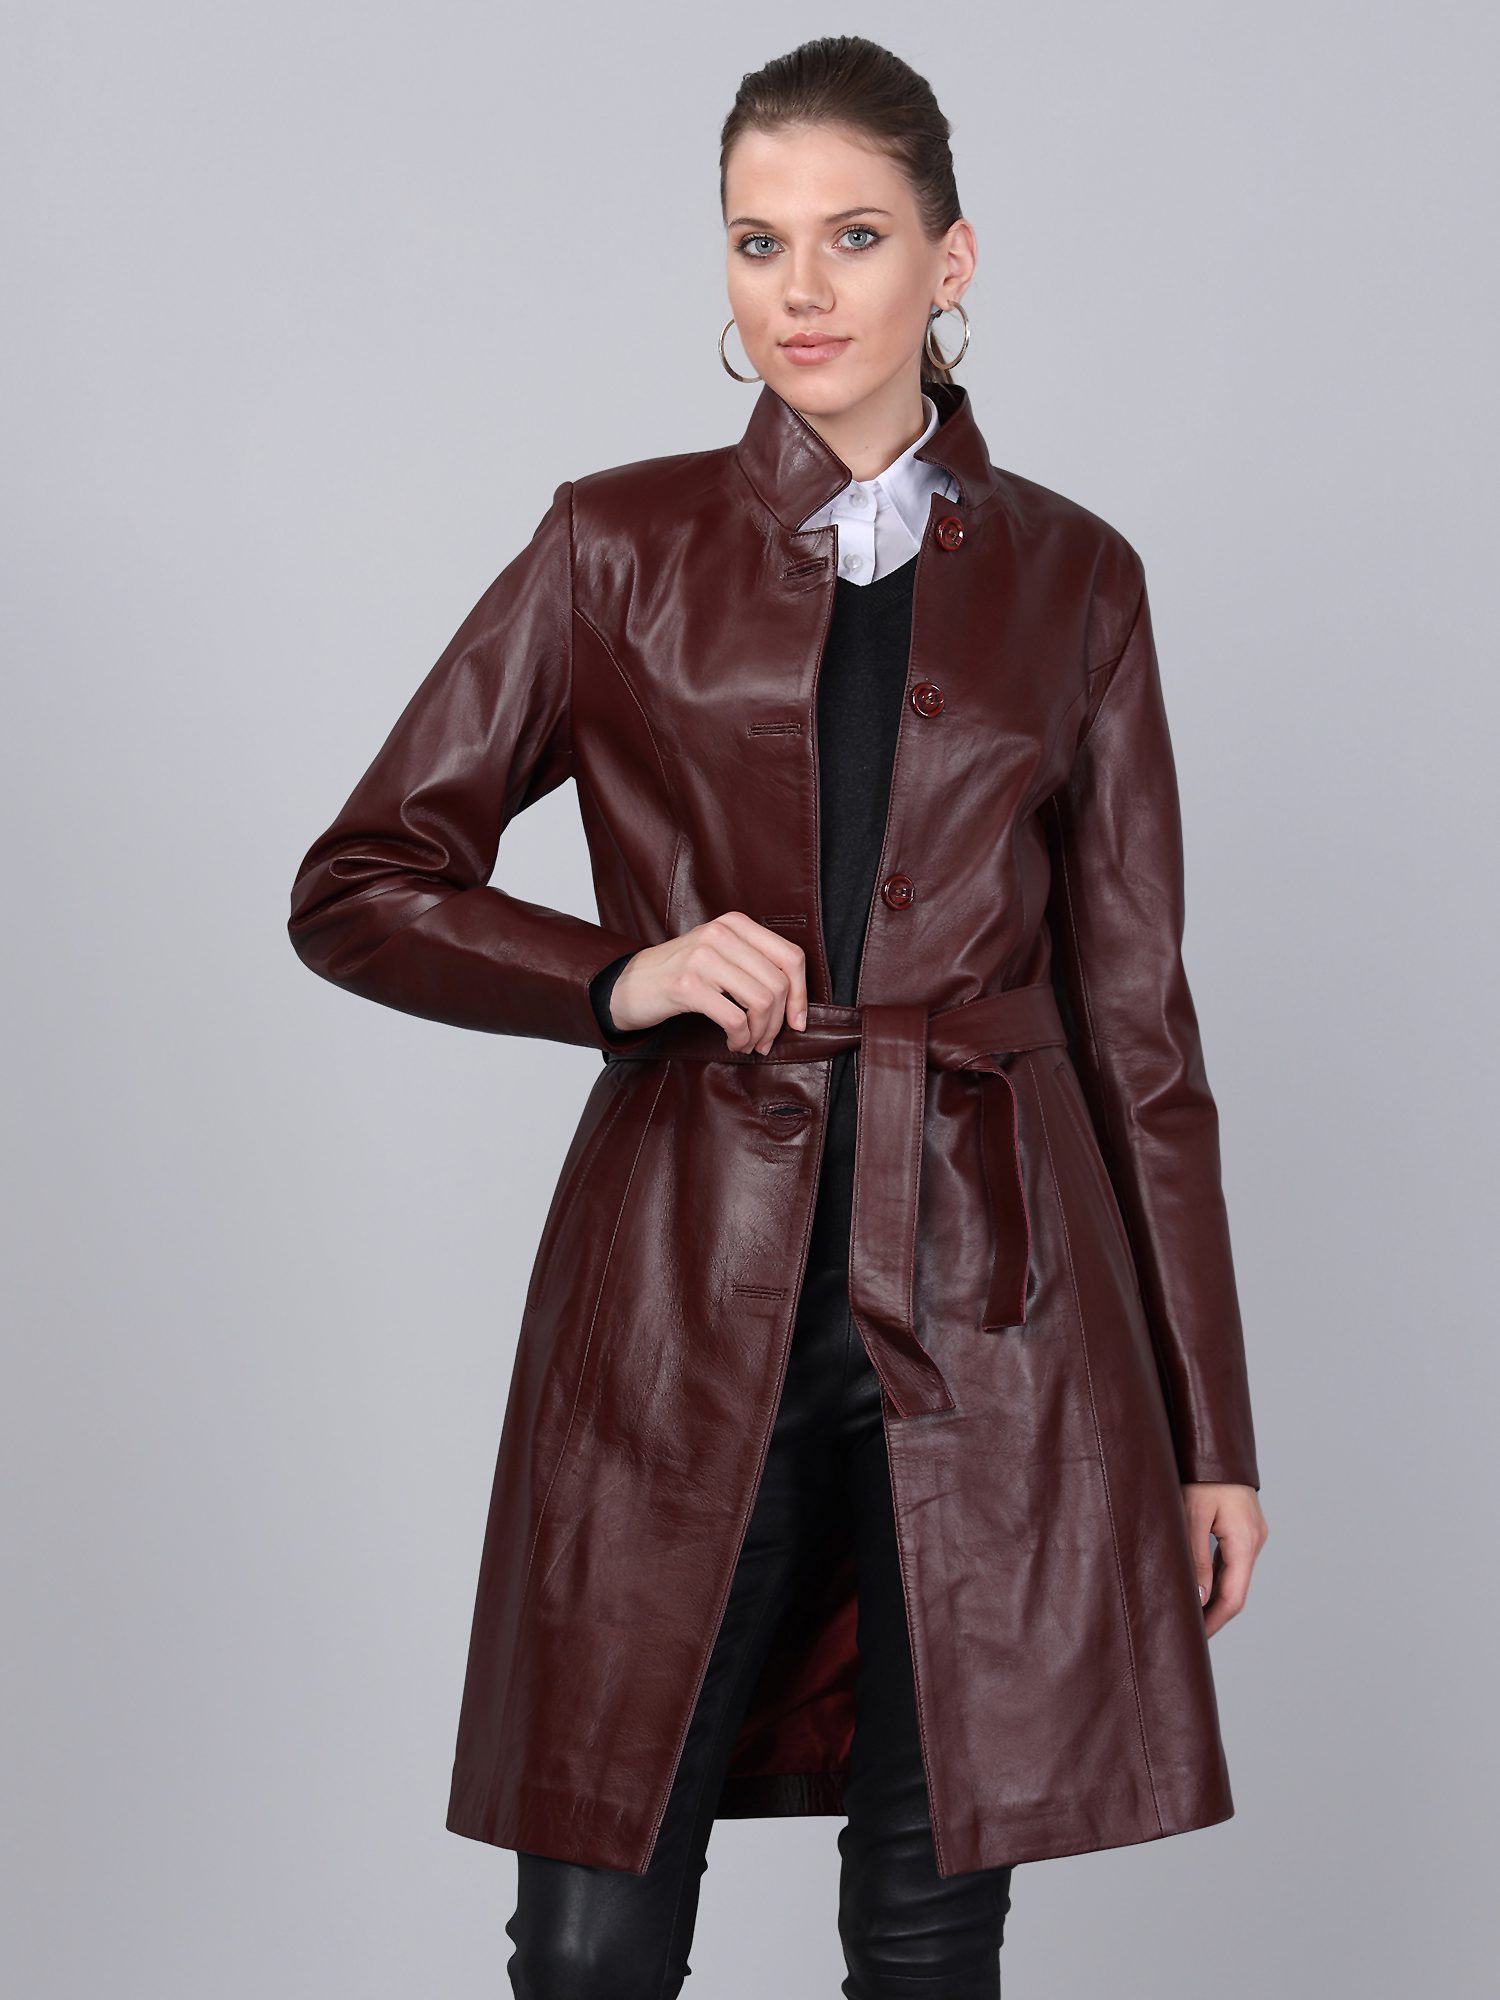 Women's Leather Jacket - Basics&More